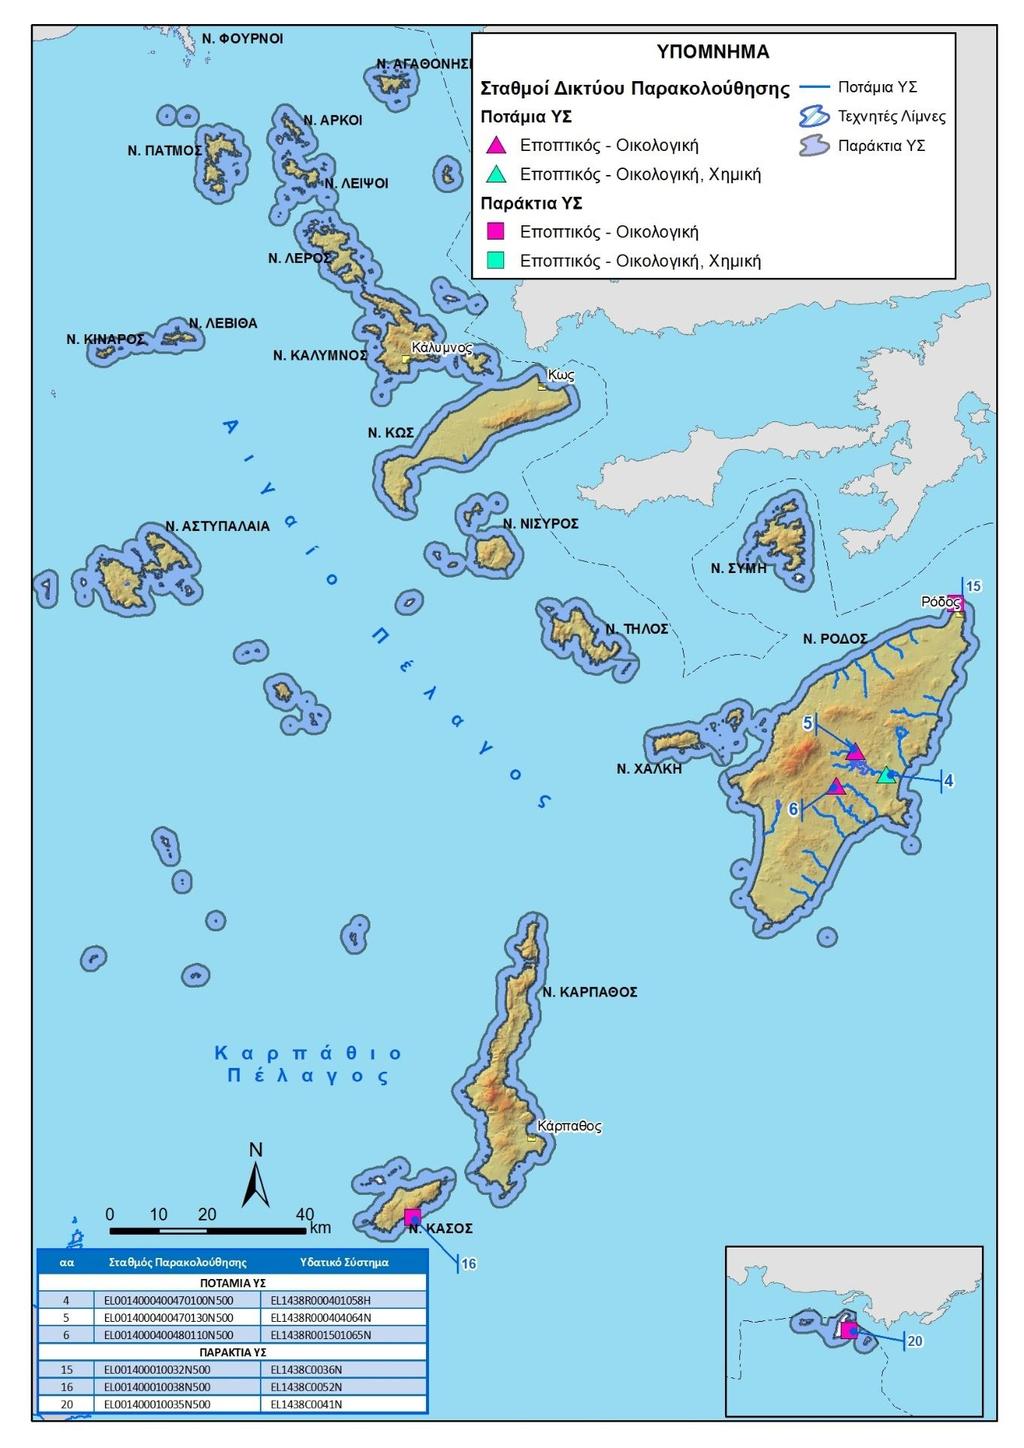 Κατάρτιση της ηςαναθεώρησης του Σχεδίου Διαχείρισης Λεκανών Απορροής Ποταμών του ΥΔ Νήσων Αιγαίου (EL4) Εικόνα 7 Σταθμοί του ΕΔΠ που αξιοποιήθηκαν για την ταξινόμηση της κατάστασης των